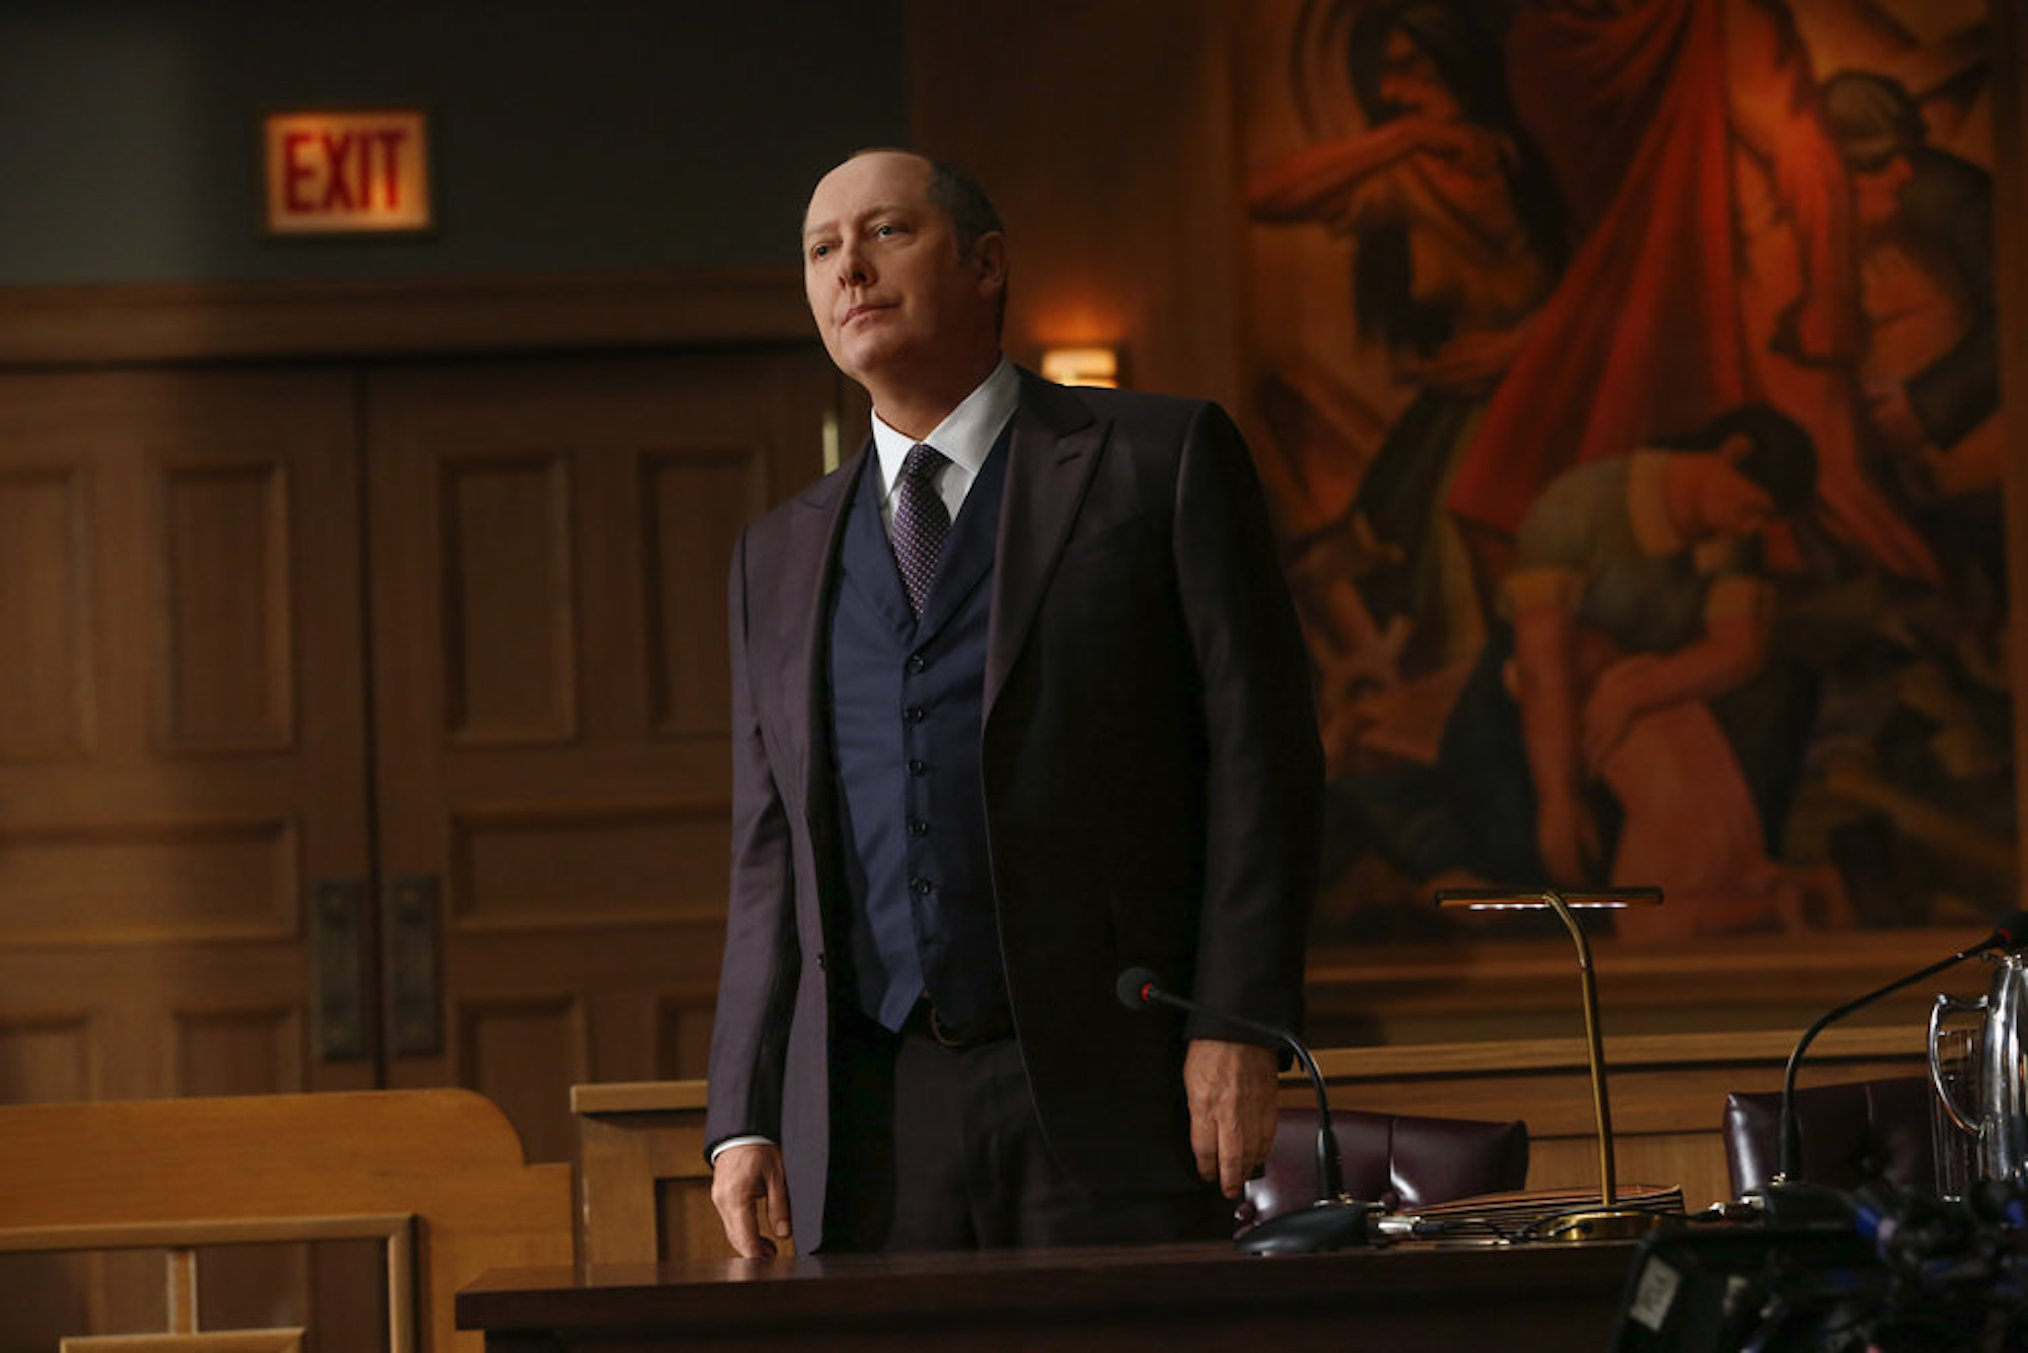 tabe tro dagsorden Can Red Reddington Escape Execution? 'Blacklist' EP Jon Bokenkamp Weighs In